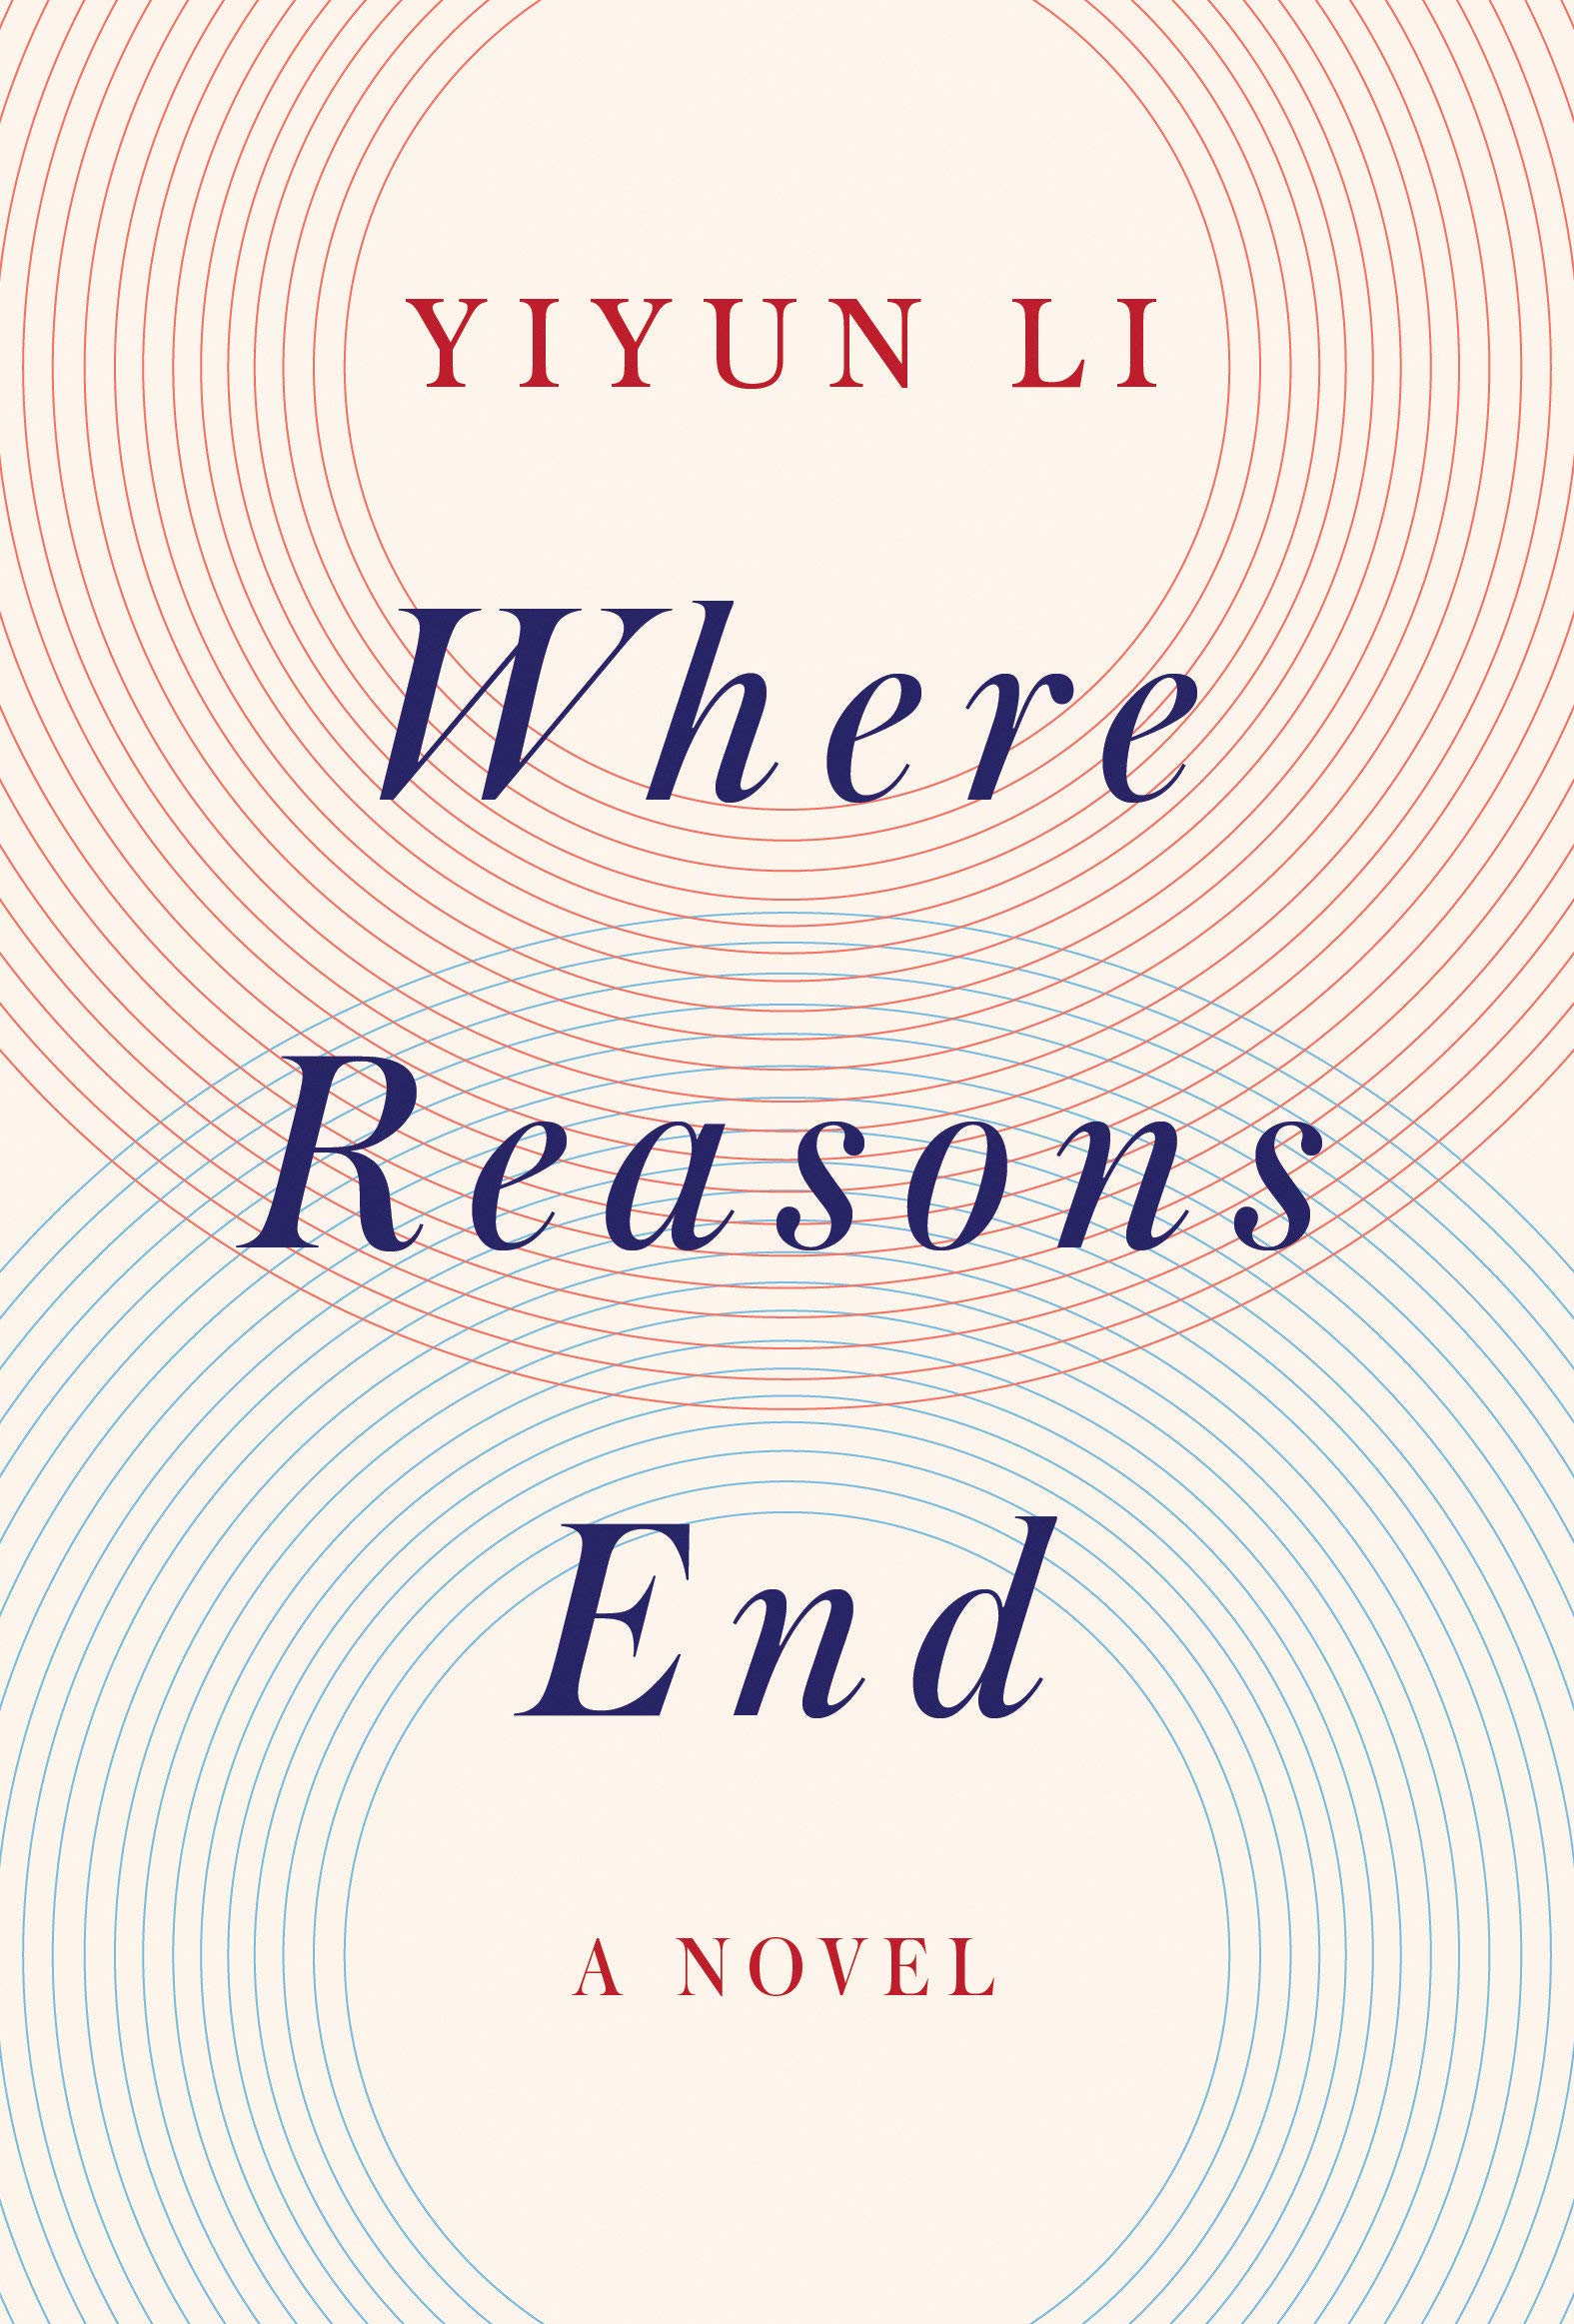 Where Reasons End: A Novel